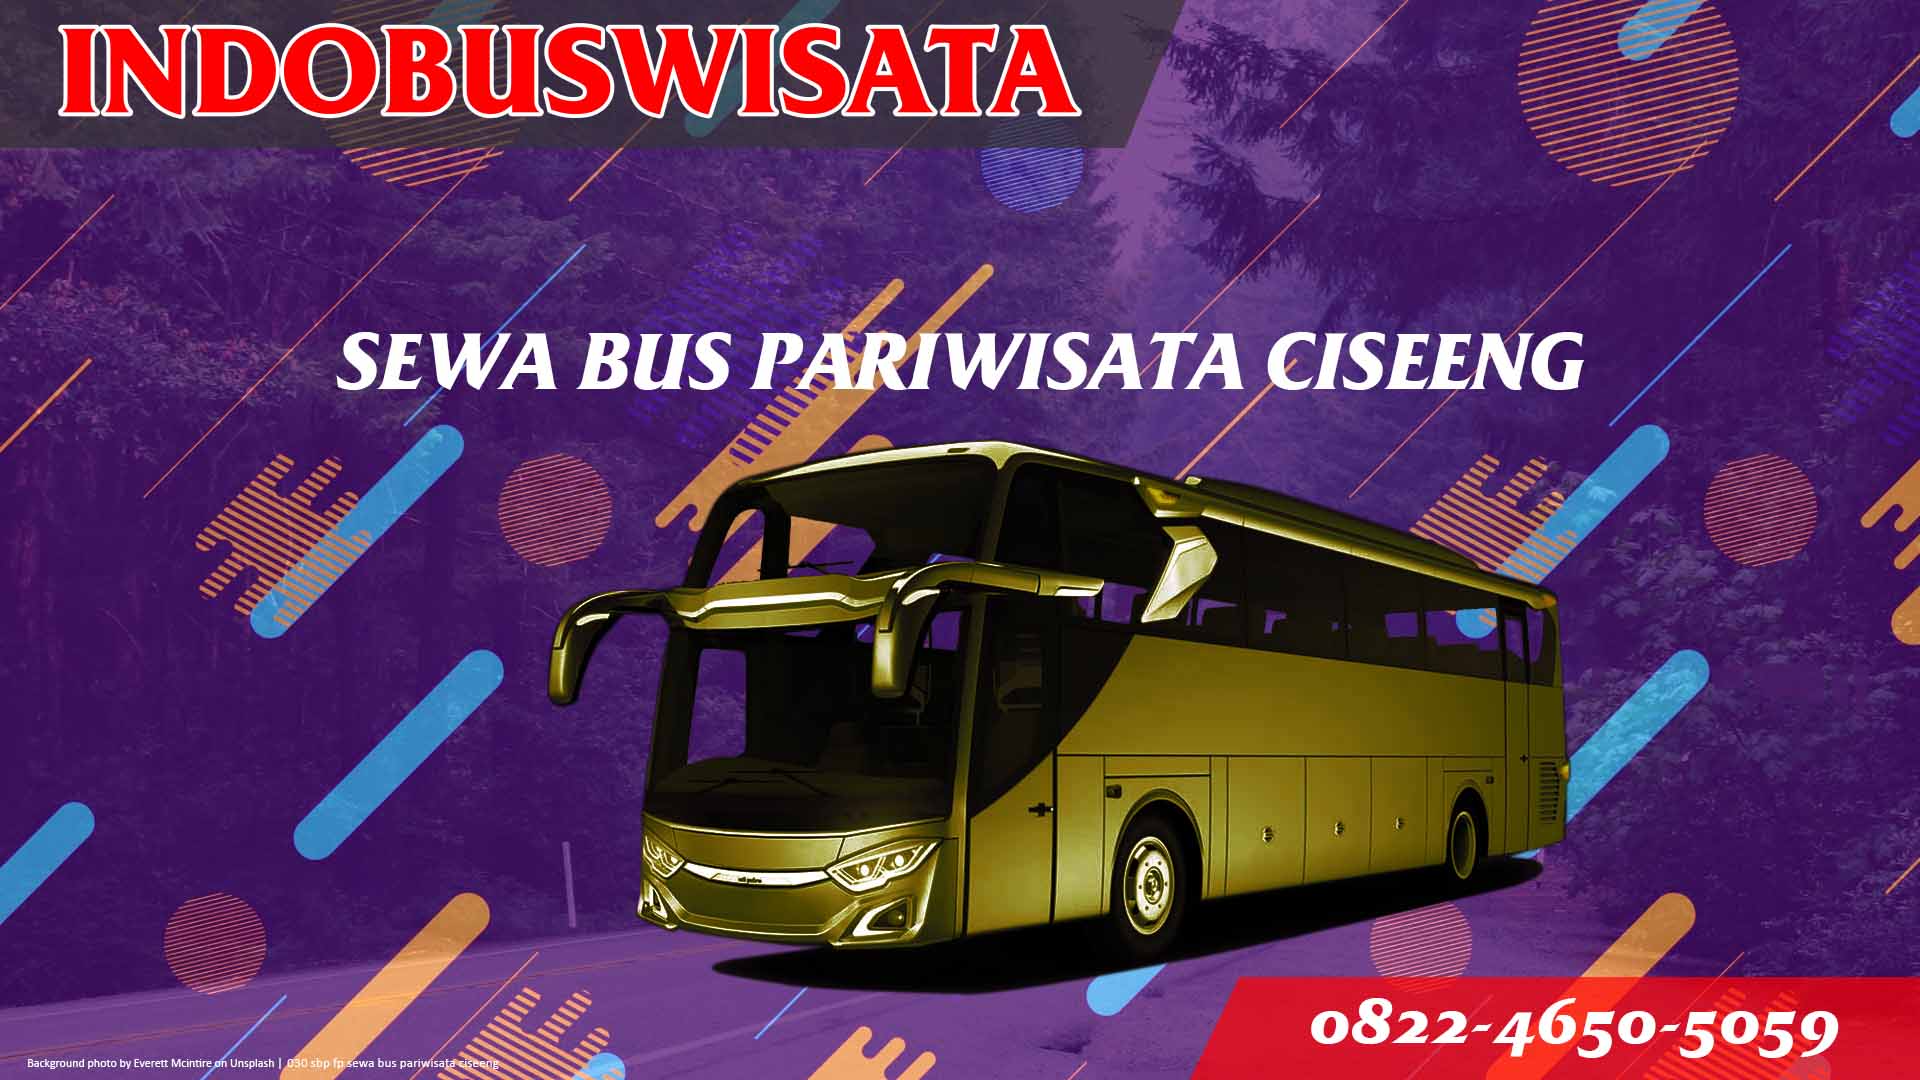 030 Sbp Fp Sewa Bus Pariwisata Ciseeng Indobuswisata